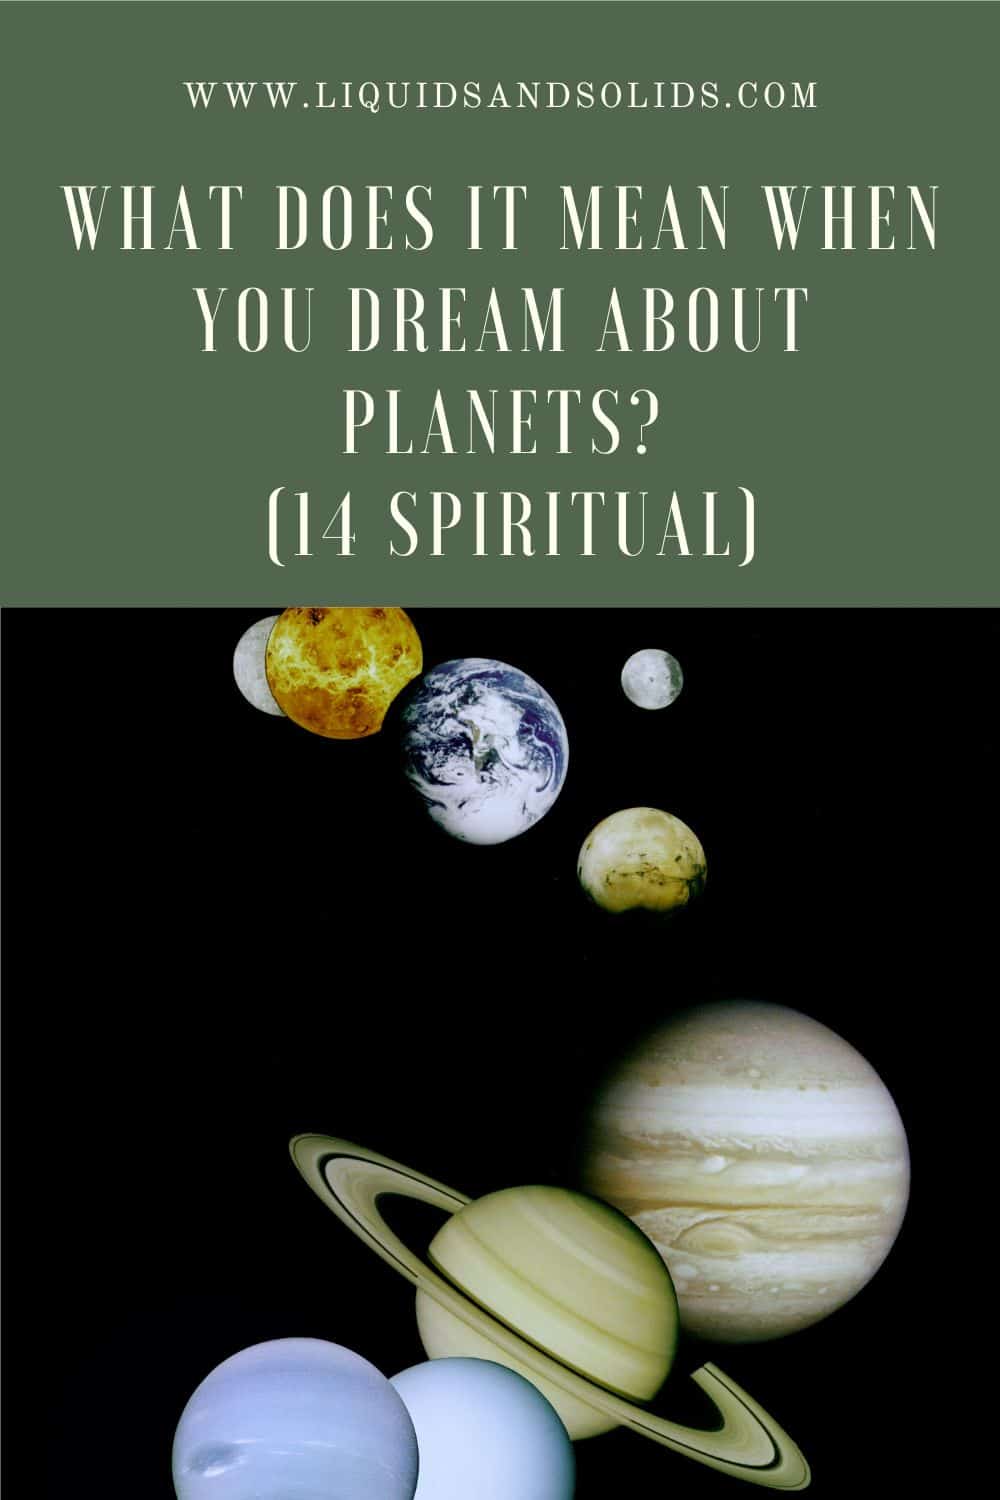  هل تحلم بالكواكب؟ (14 معاني روحية)